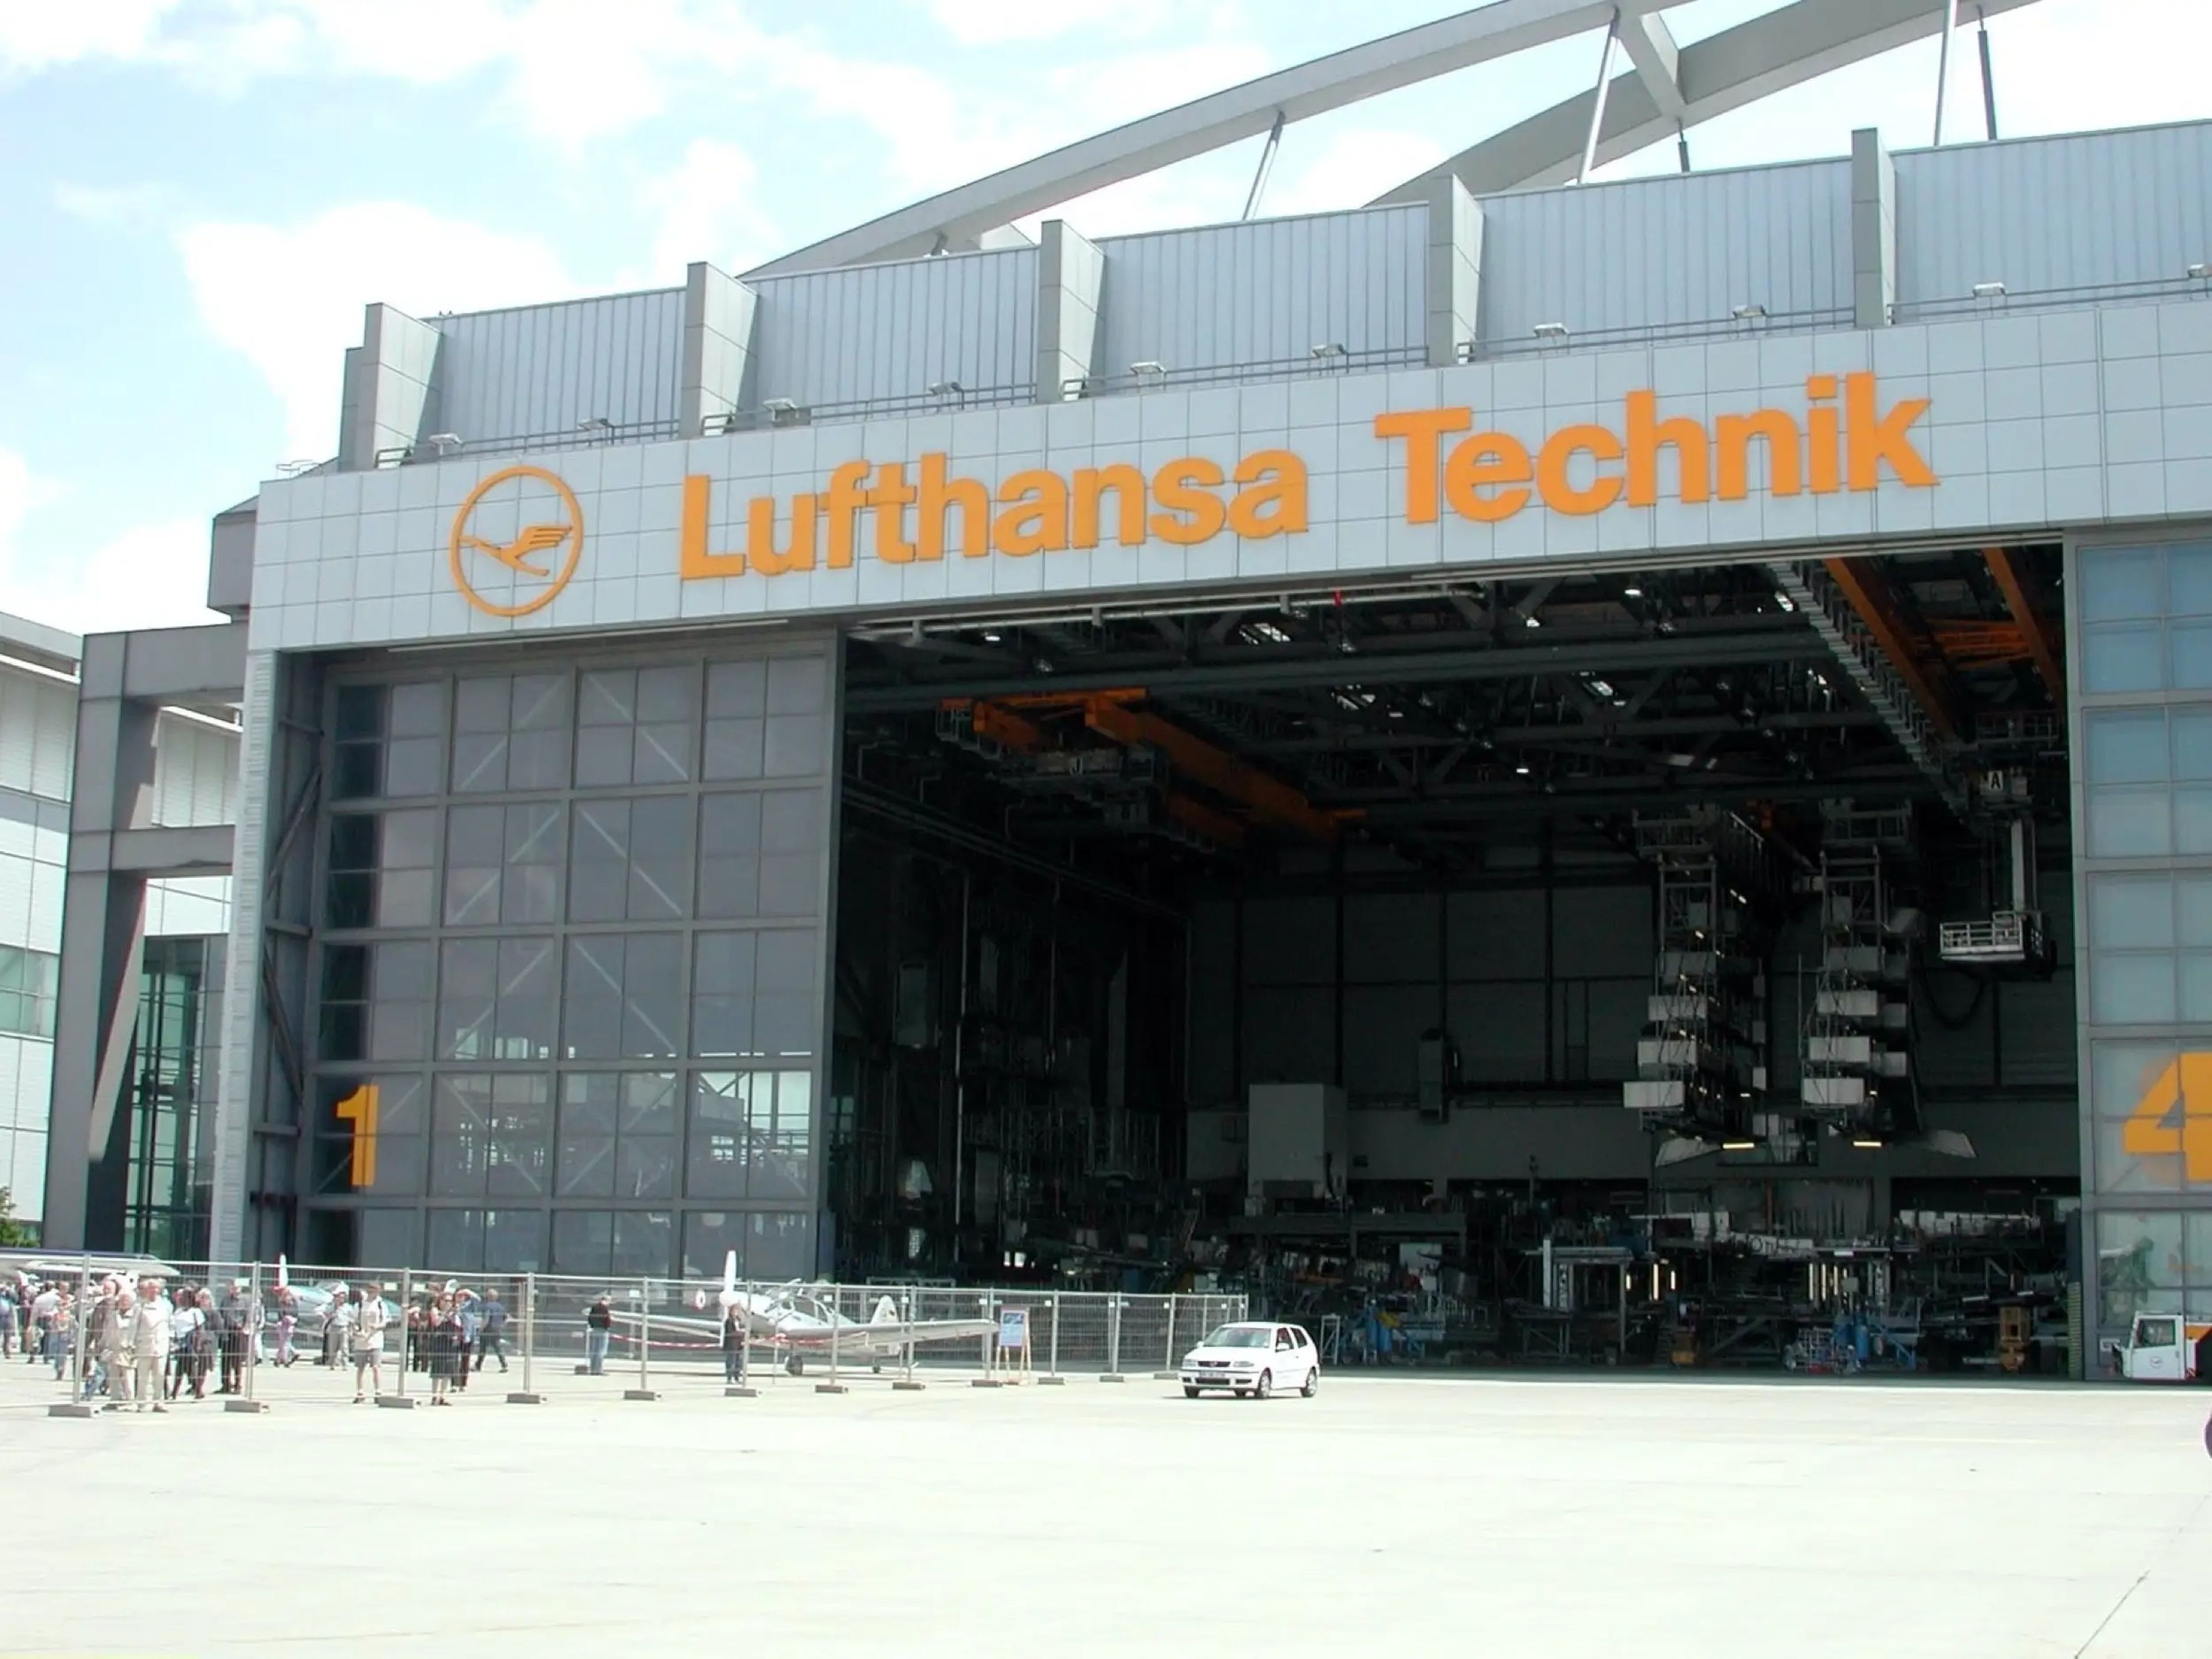 Un hangar de Lufthansa Technik.